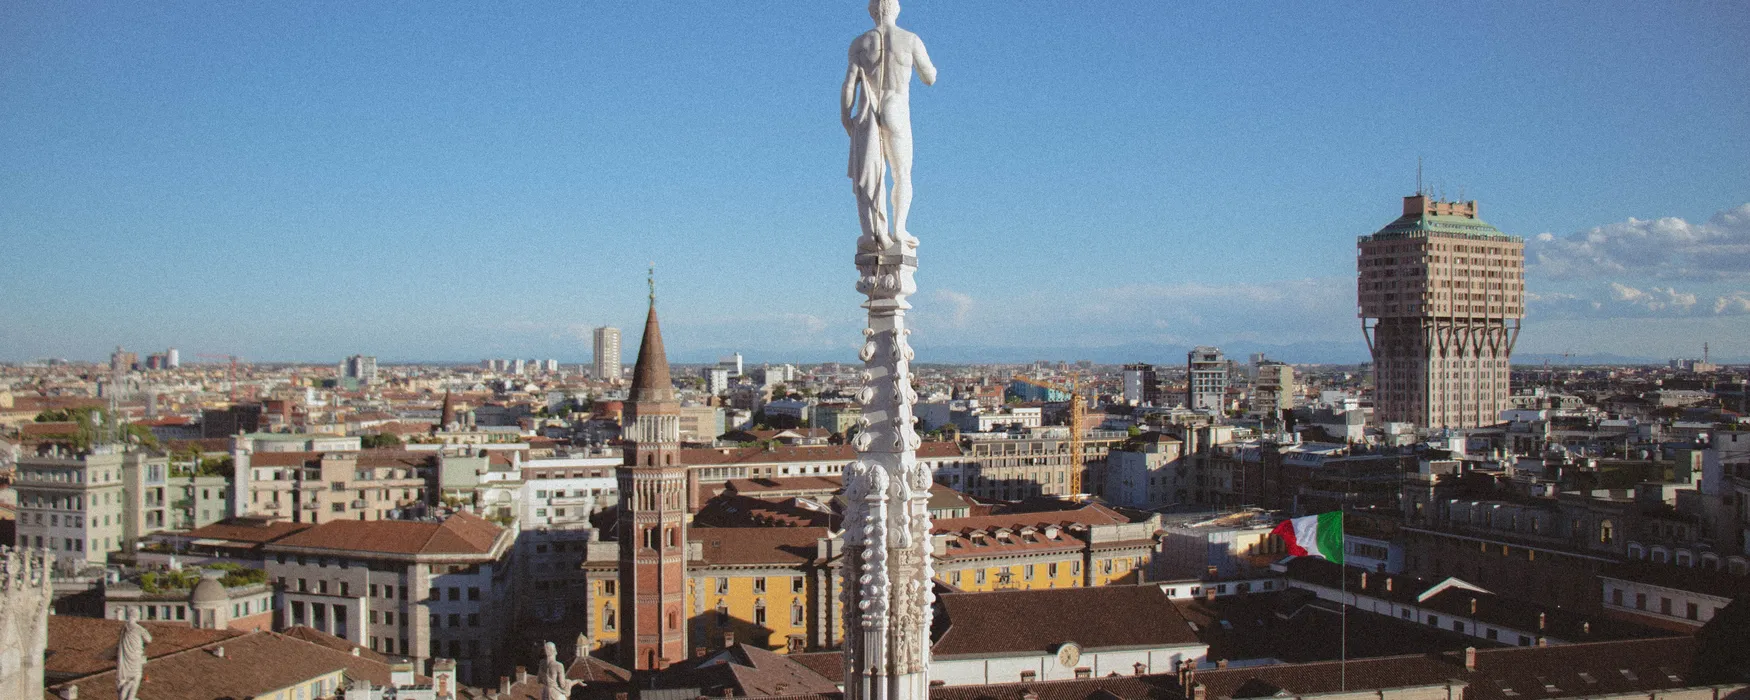 Het mooiste uitzicht in Milaan vanaf dit privéterras